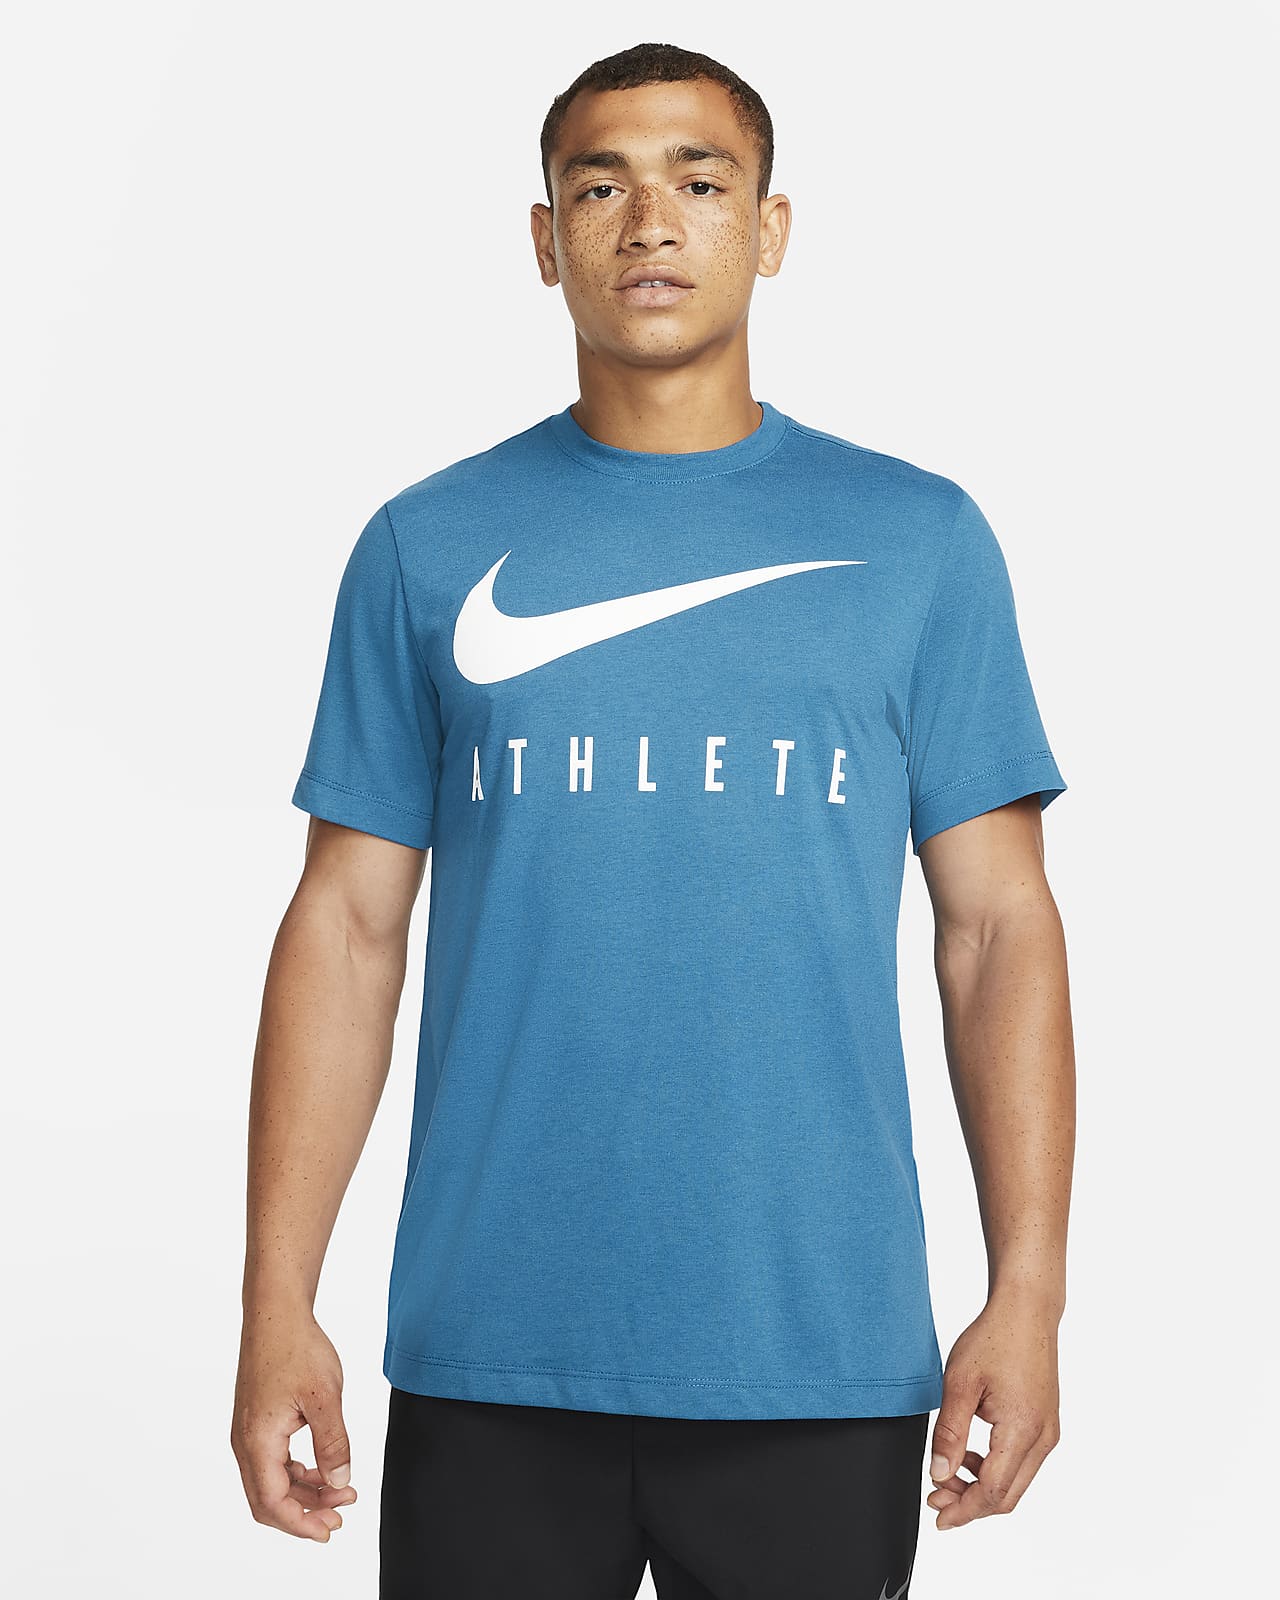 Nike Dri-Fit Men'S Training T-Shirt. Nike Be